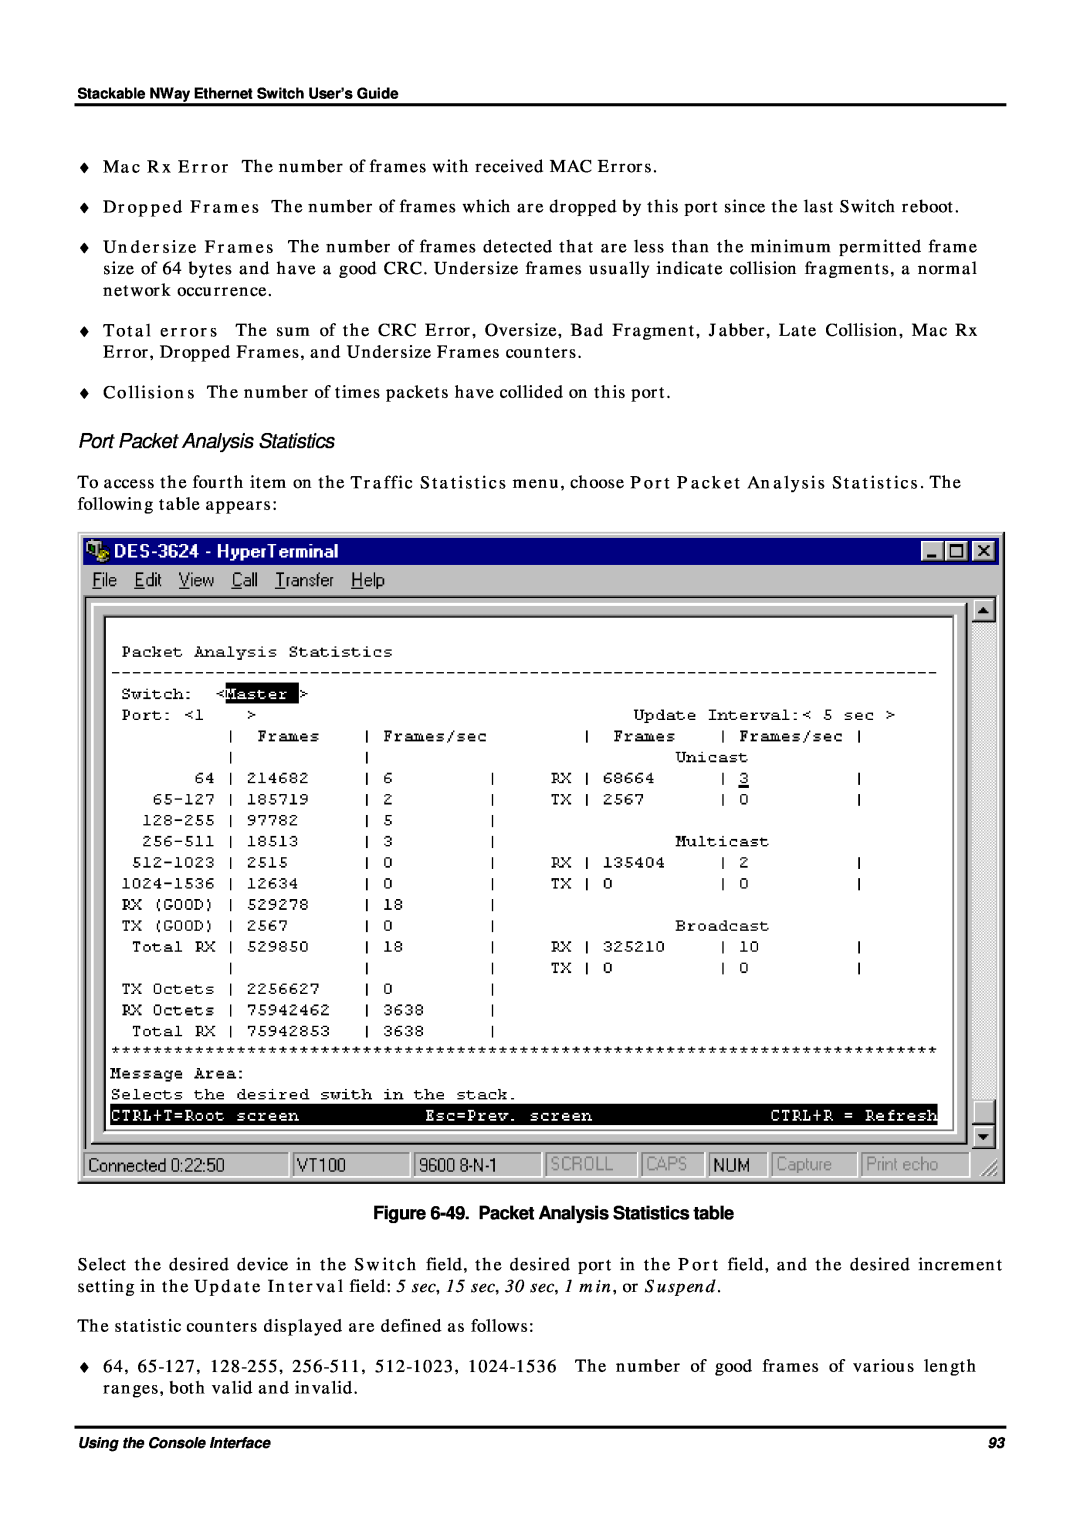 D-Link DES-3624 manual Port Packet Analysis Statistics, 49. Packet Analysis Statistics table 